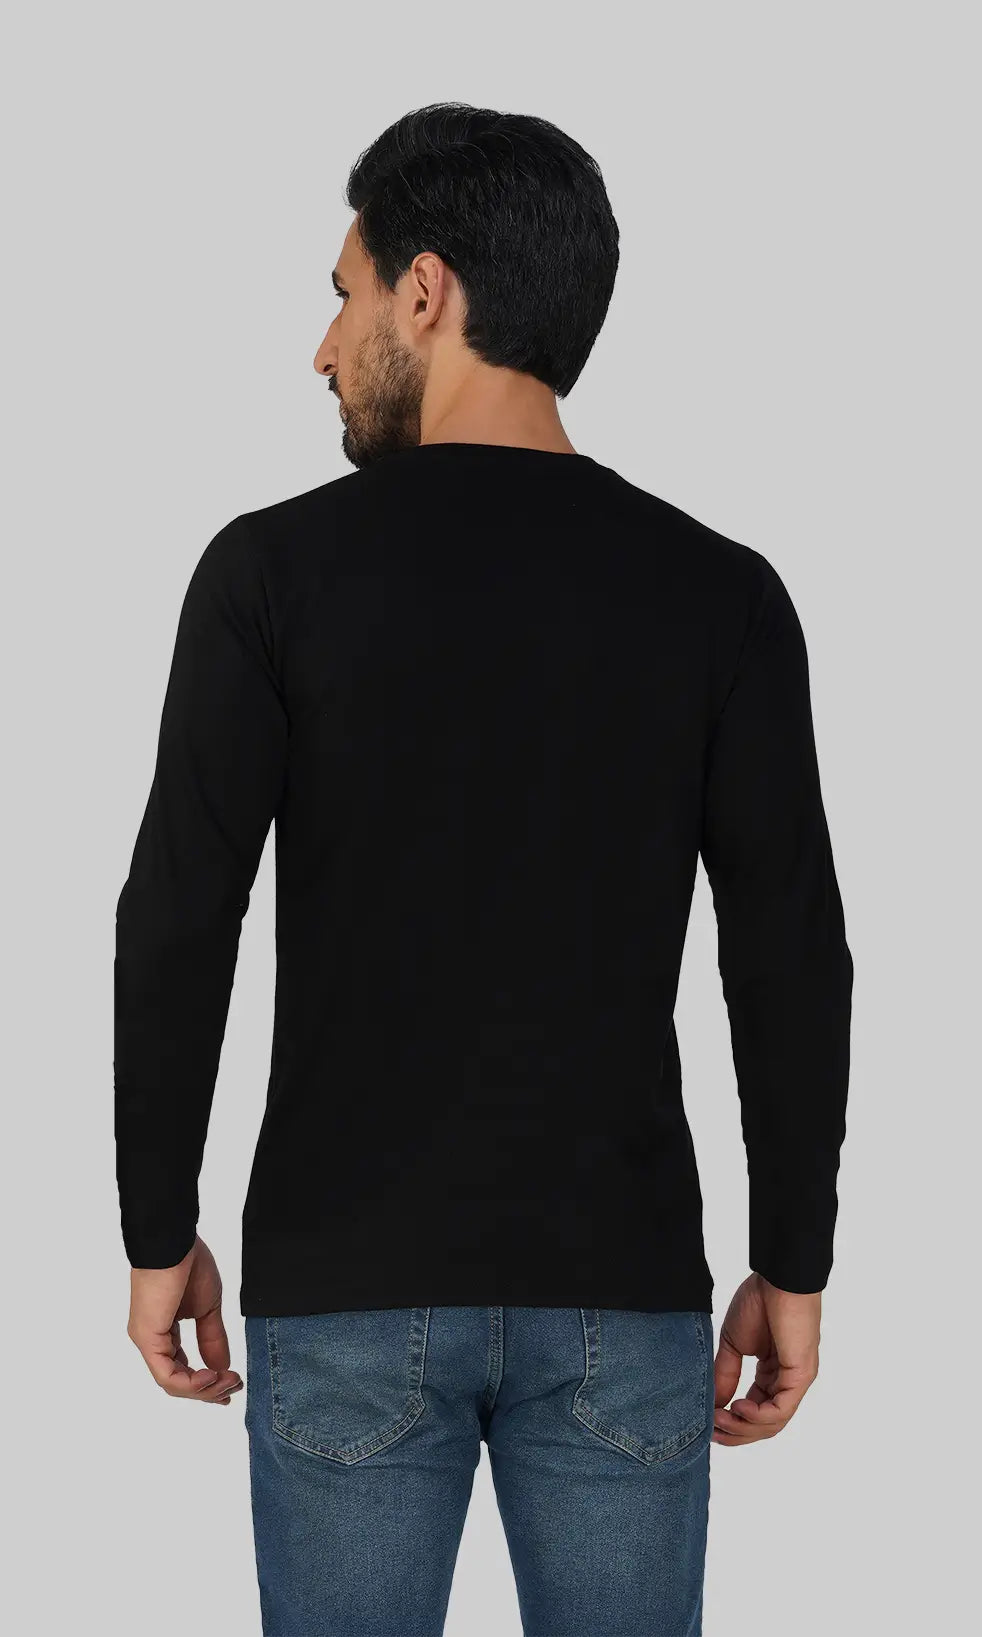 Mebadass Cotton Men's Fullsleeve Regular Size T-shirt - Black